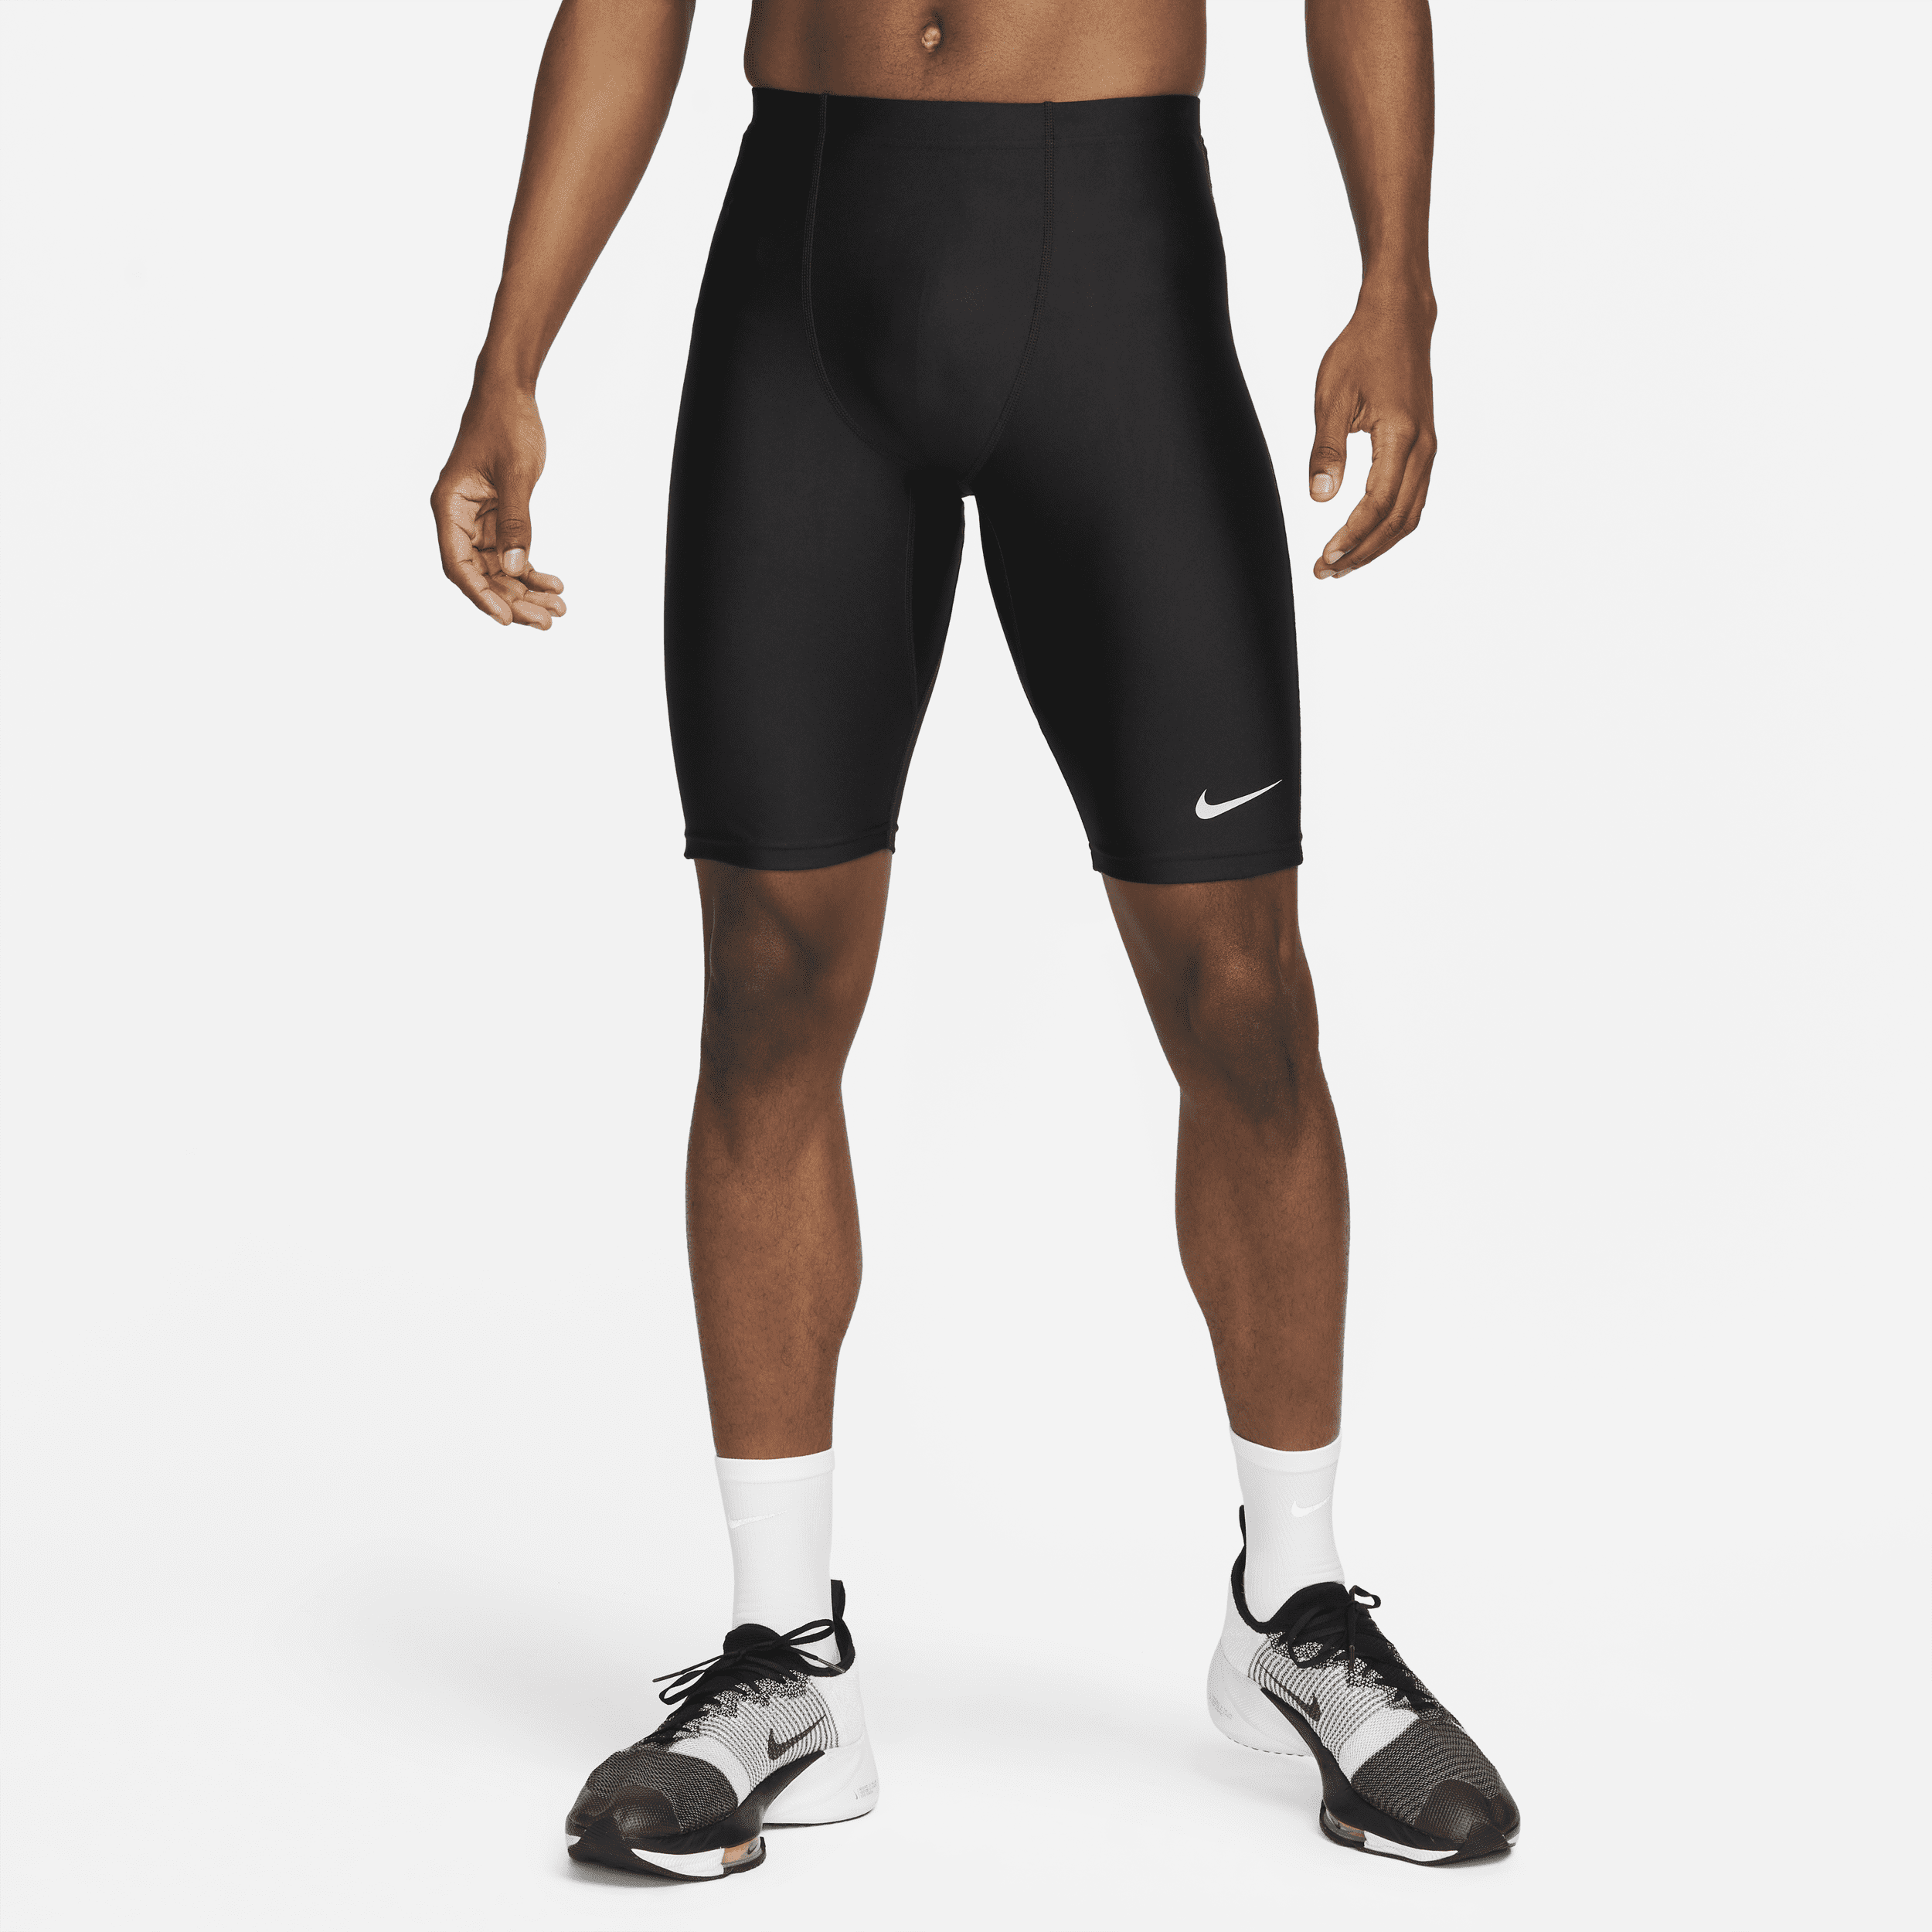 Nike Dri-FIT Fast-løbetights i halv længde til mænd - sort